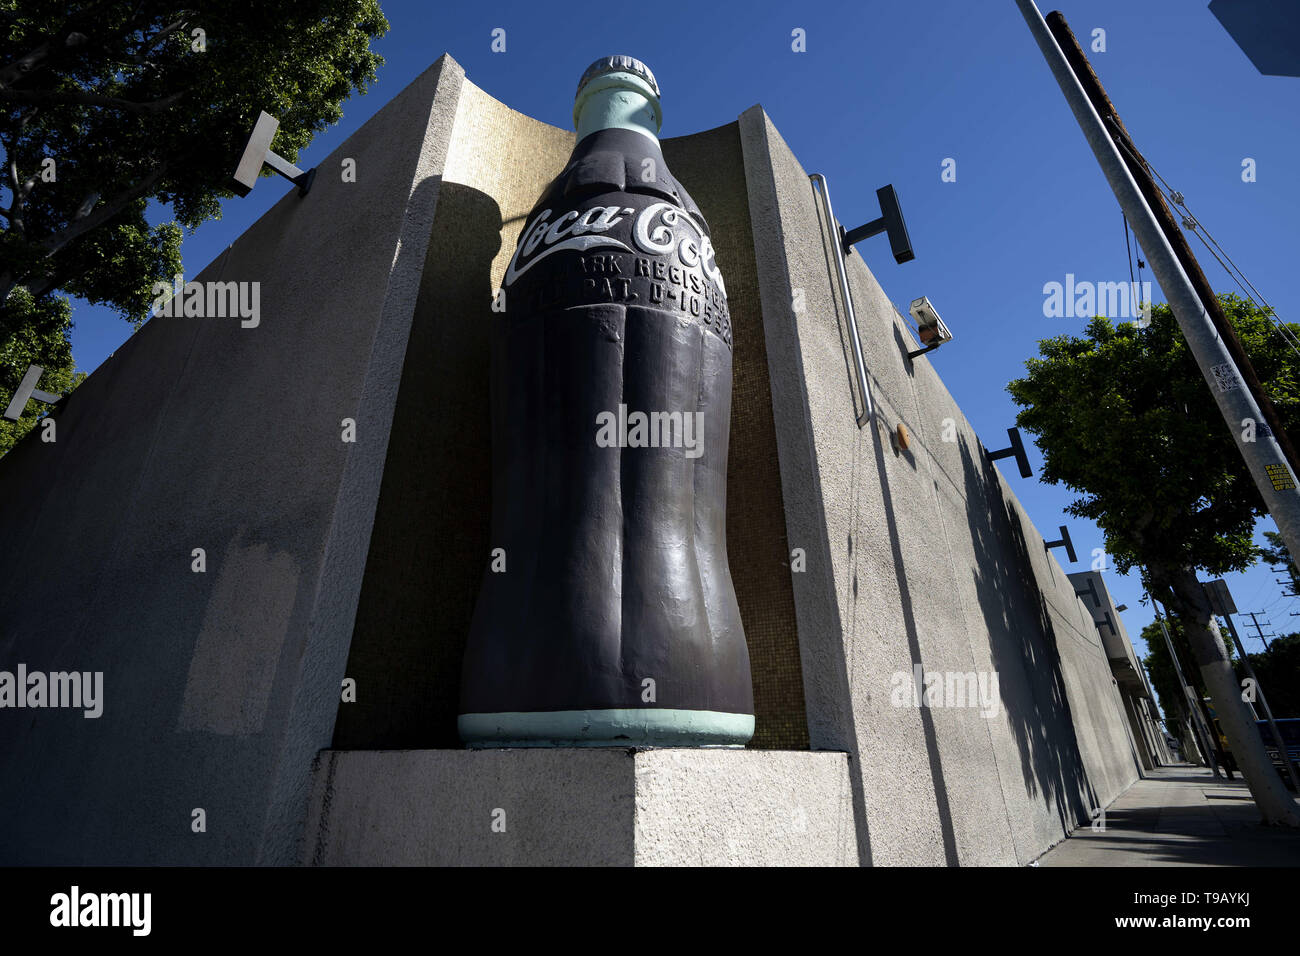 Los Angeles, CA, USA. Feb 11, 2019. Une bouteille de Coca-Cola sculpture rencontrés hors de la Coca-Cola Bottling Co. building à Los Angeles, Californie. Ronen Crédit : Tivony SOPA/Images/ZUMA/Alamy Fil Live News Banque D'Images